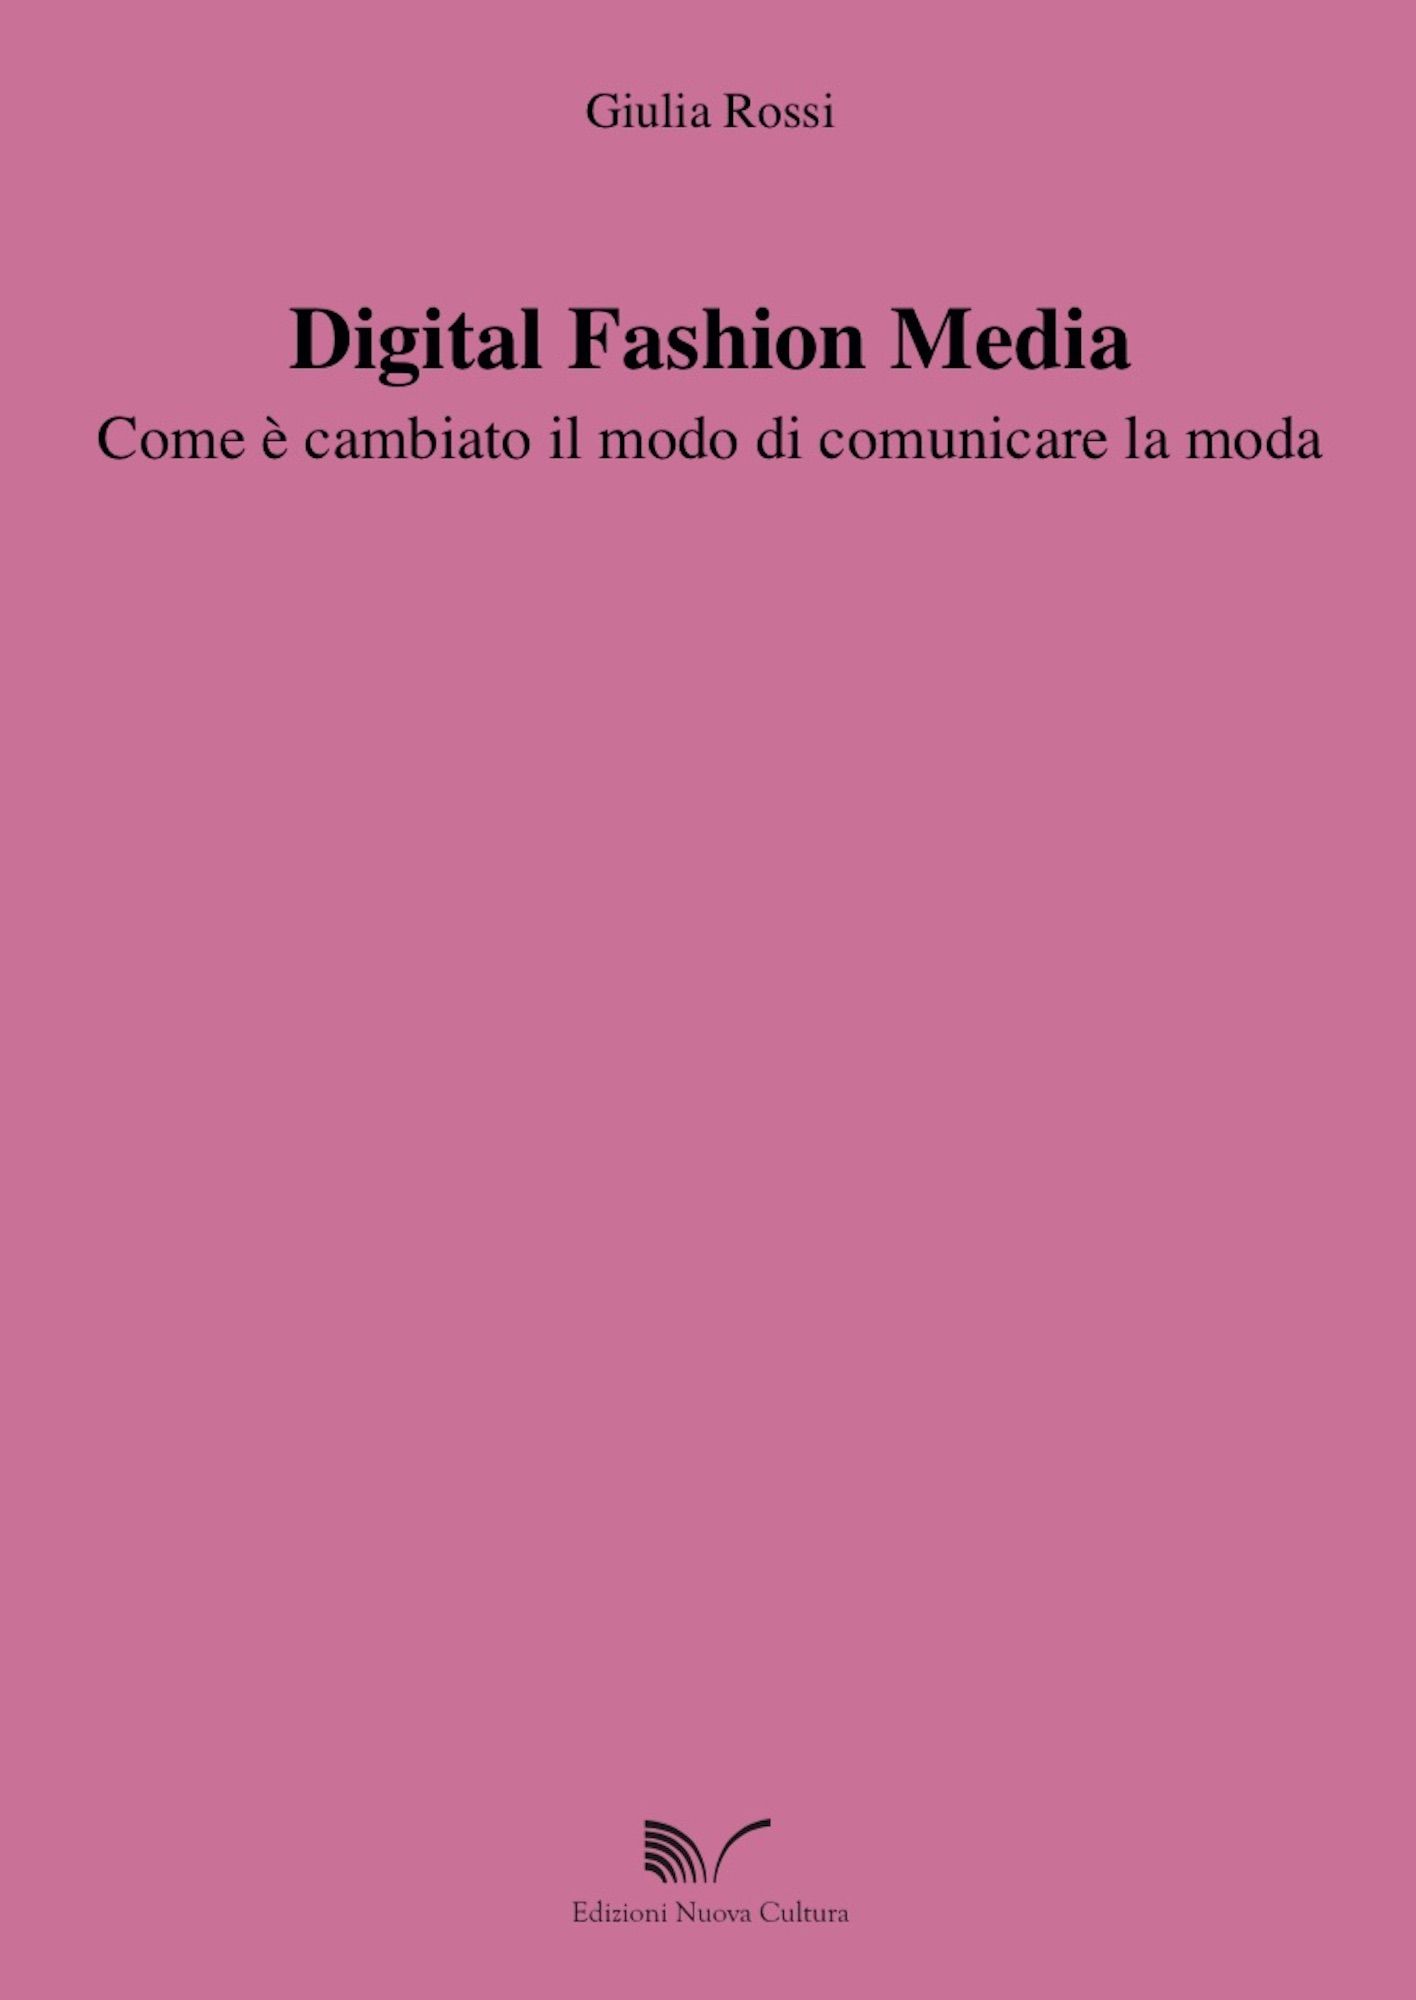 la cover di ﻿﻿digital fashion media   com'è cambiato il modo di comunicare la moda﻿﻿, ﻿di ﻿giulia rossi﻿ ﻿